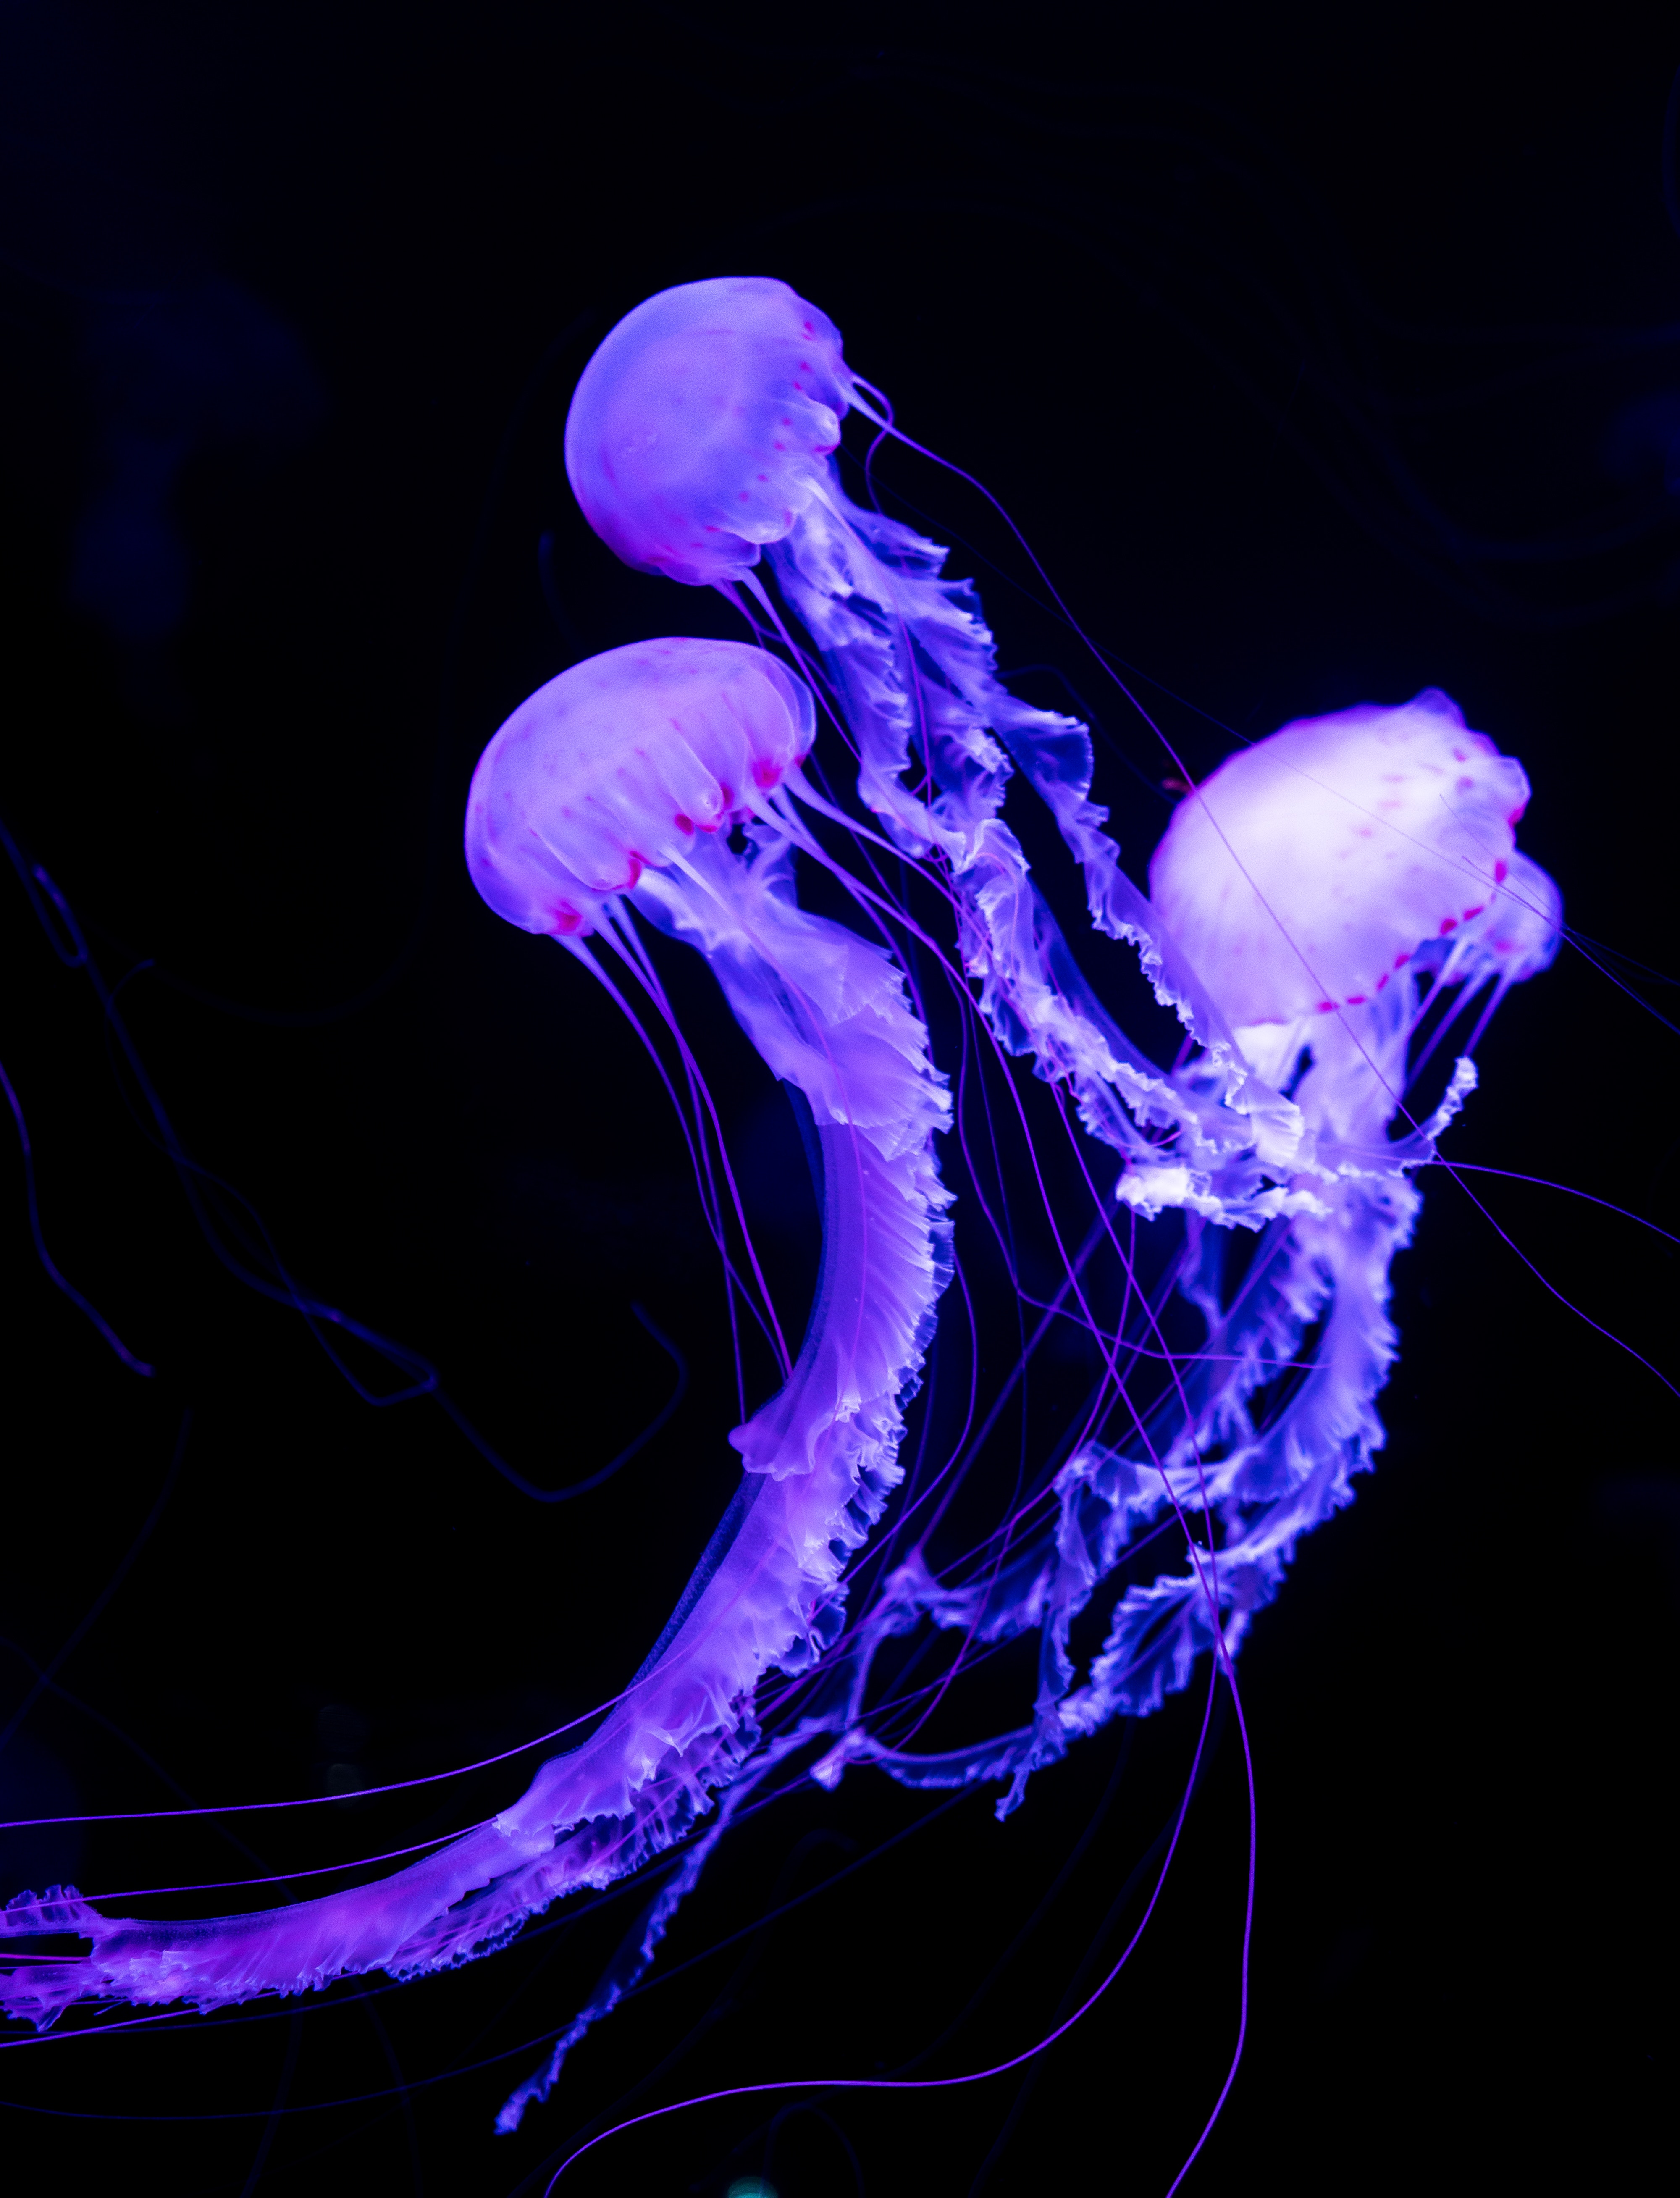 jellyfish, animals, neon, underwater world, luminous cellphone